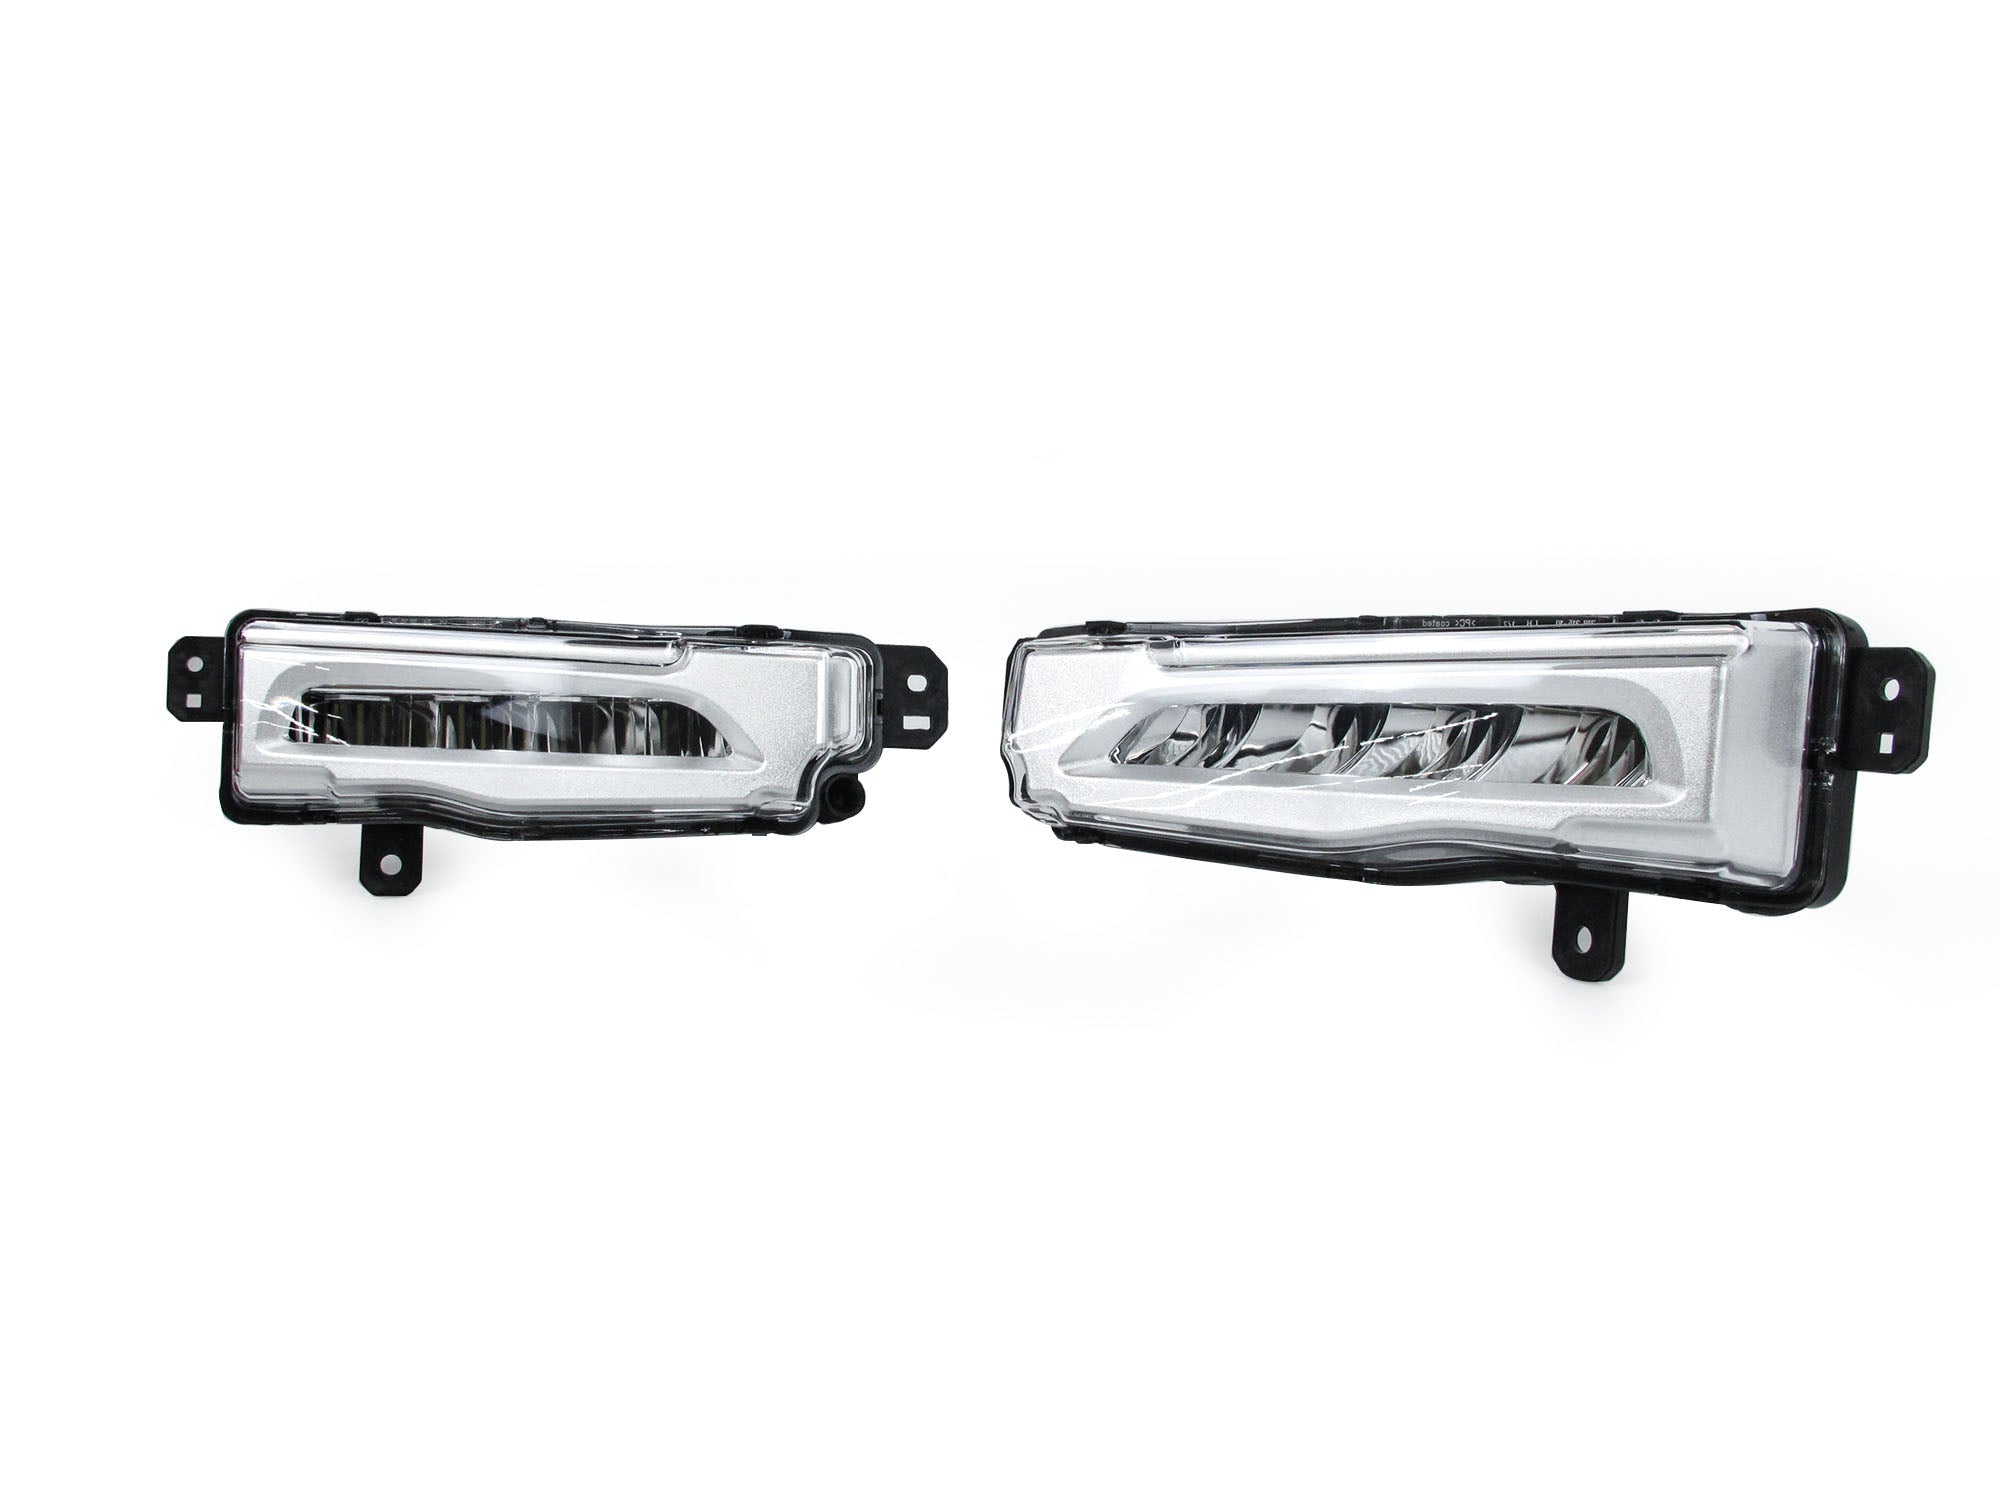 1 Paar Auto-LED-Nebelscheinwerfer Auto-Nebelscheinwerfer für Bmw